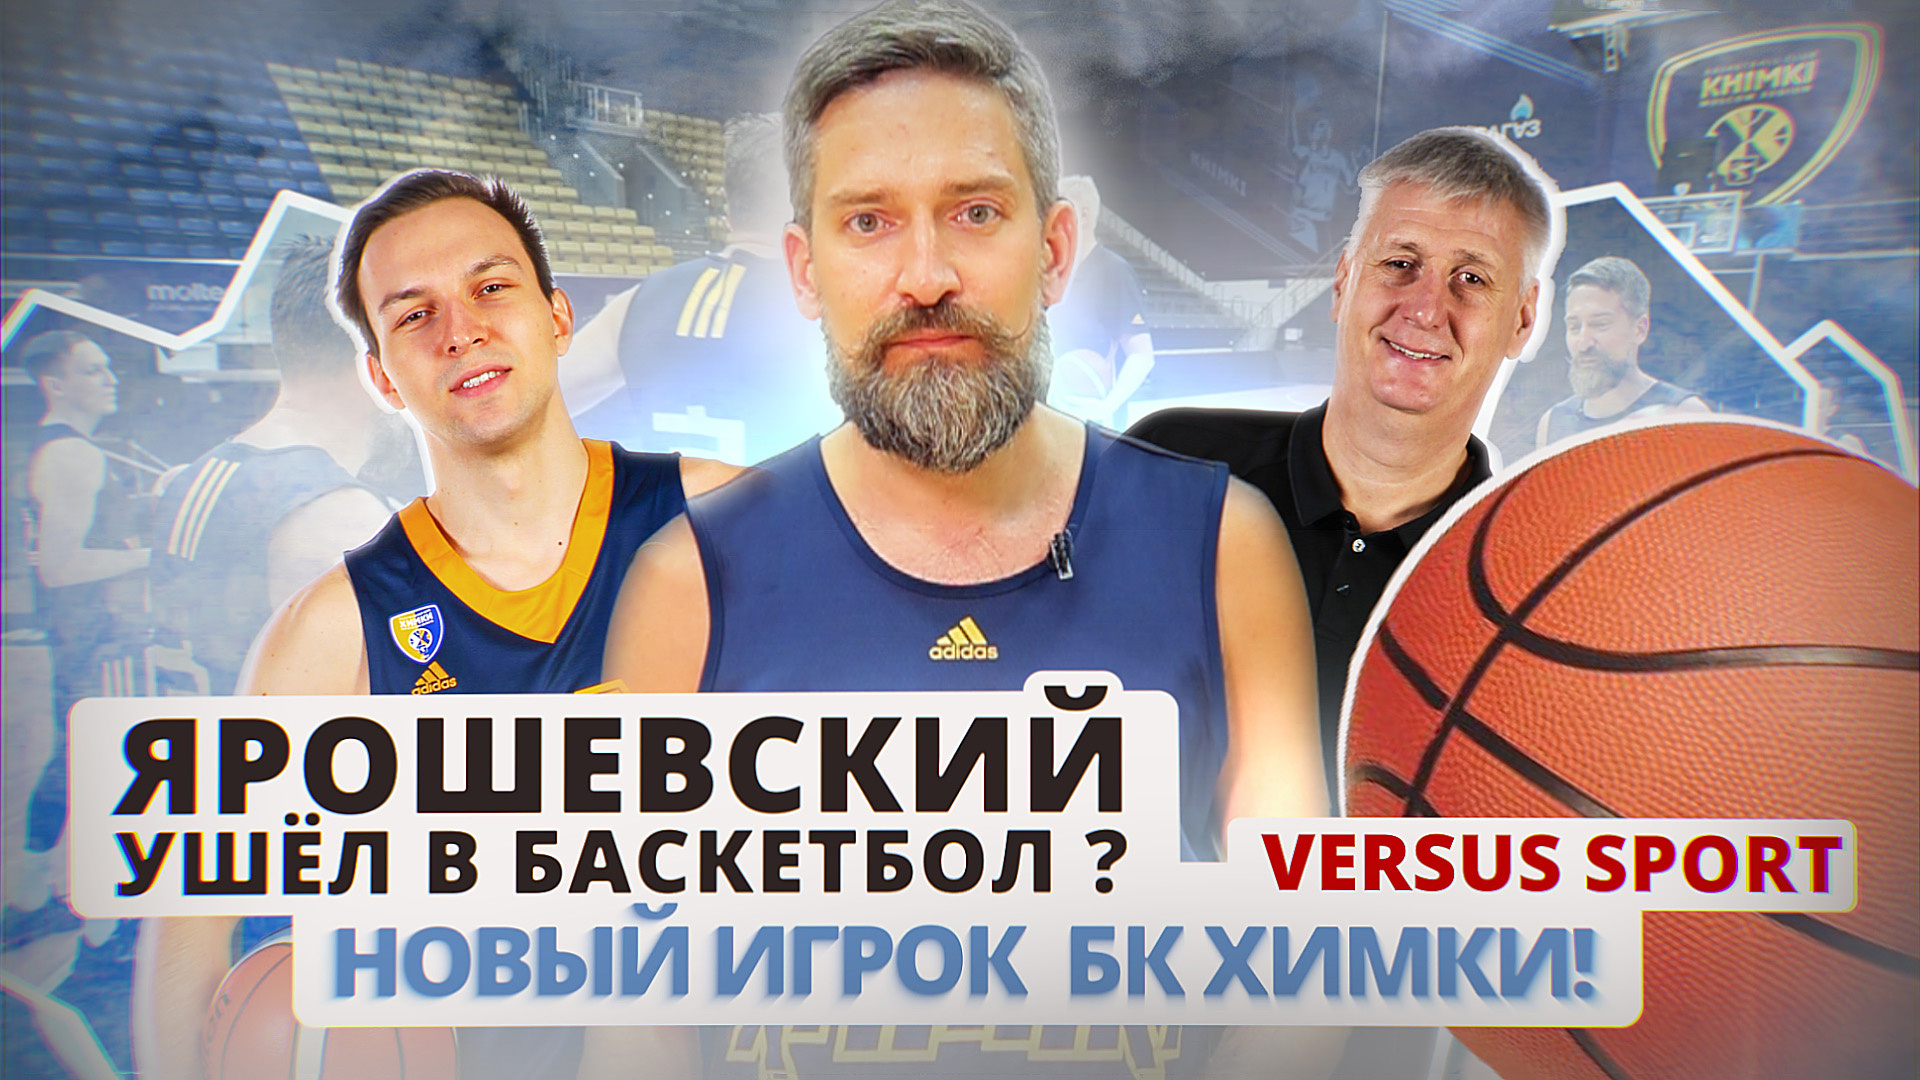 Versus Sport: Ярошевский уходит в Баскетбол? Новый игрок БК Химки!